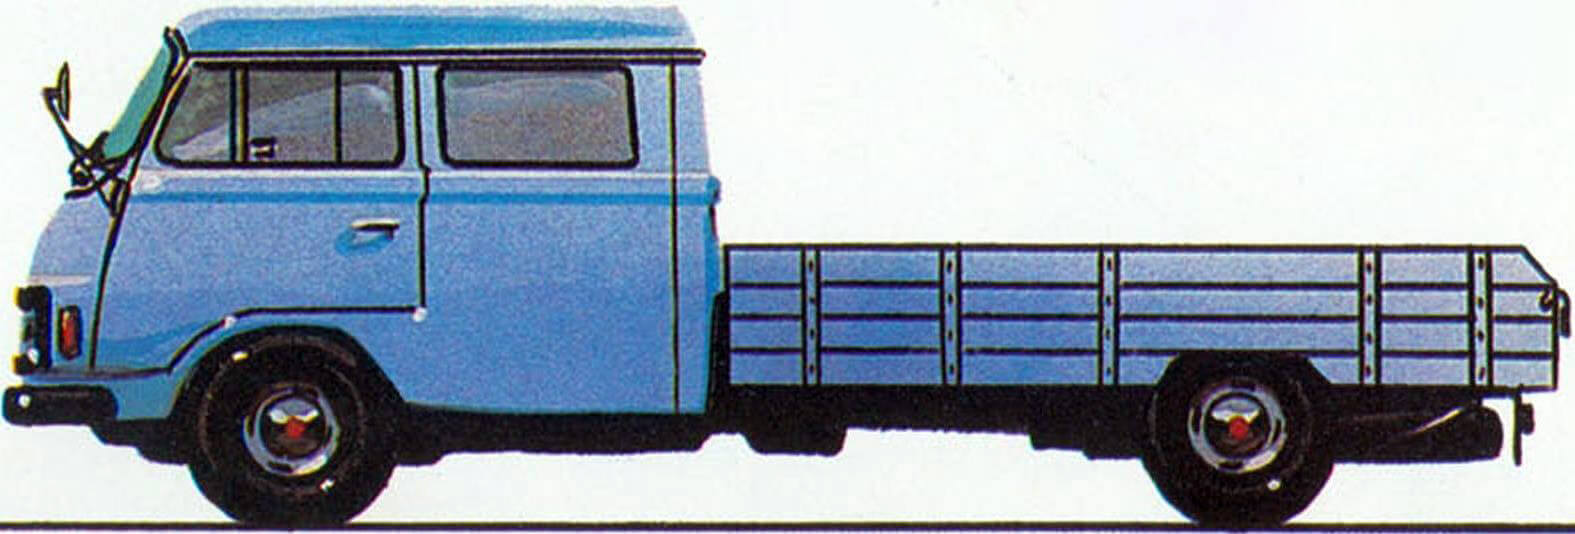 Вариант грузовика с удлиненной платформой и сдвоенной кабиной